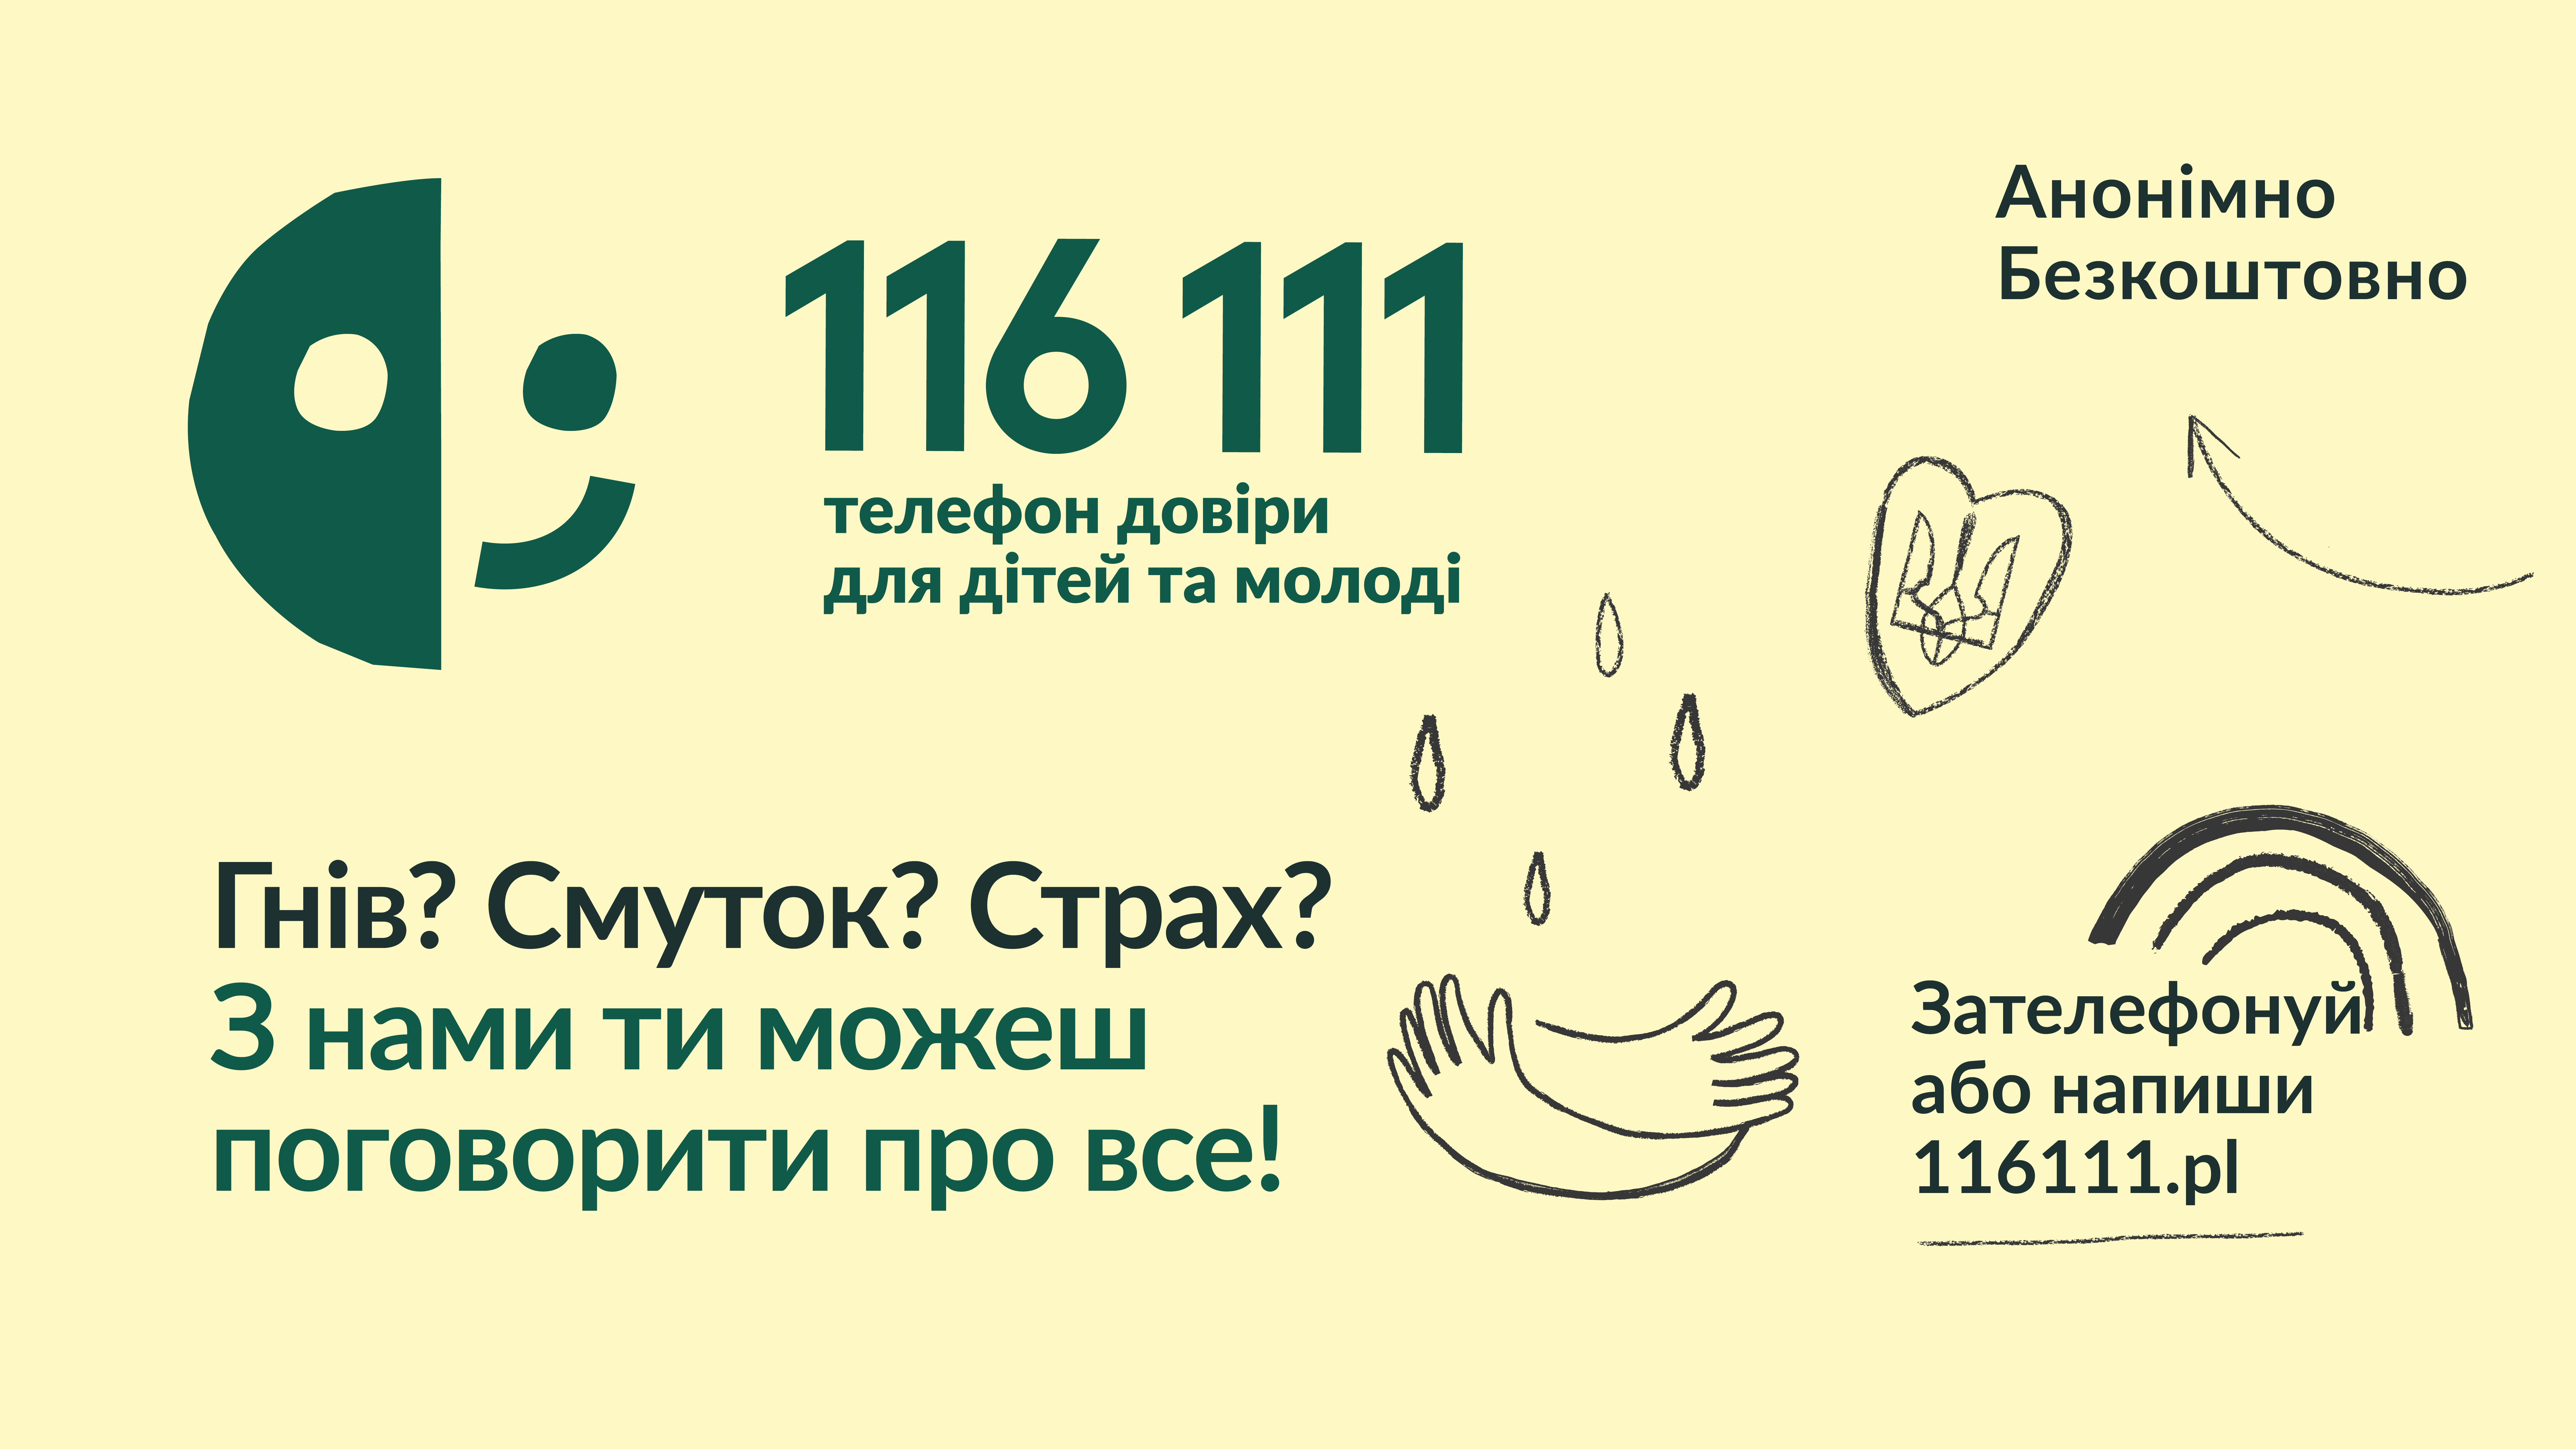 Grafika informacyjna na temat telefonu zaufania dla dzieci i młodzieży z Ukrainy